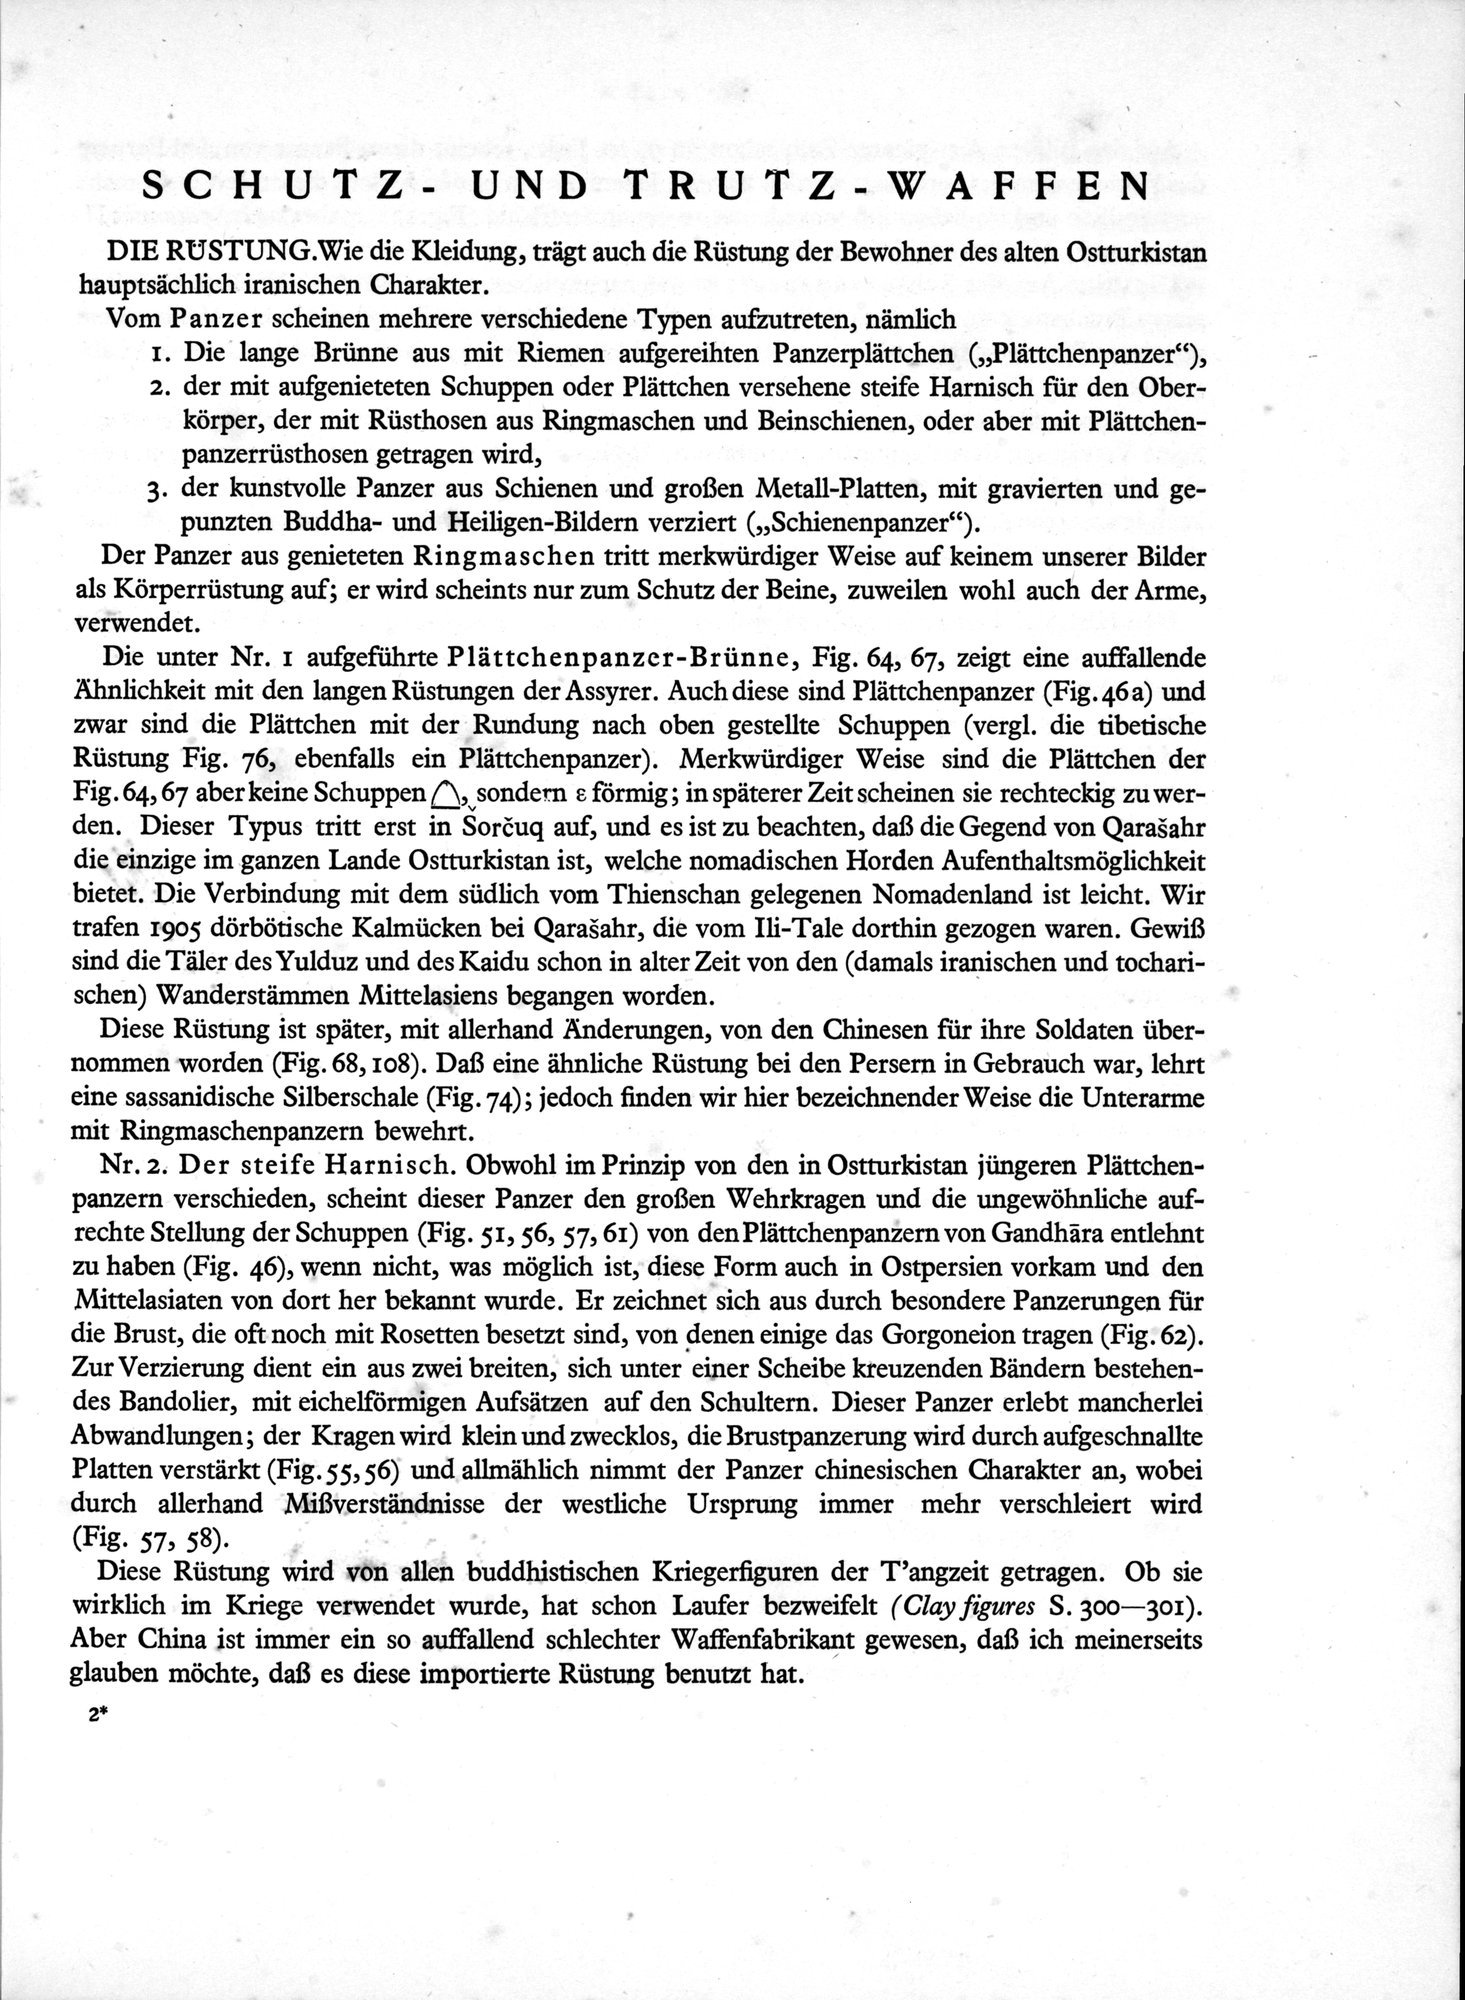 Bilderatlas zur Kunst und Kulturgeschichte Mittel-Asiens : vol.1 / Page 15 (Grayscale High Resolution Image)